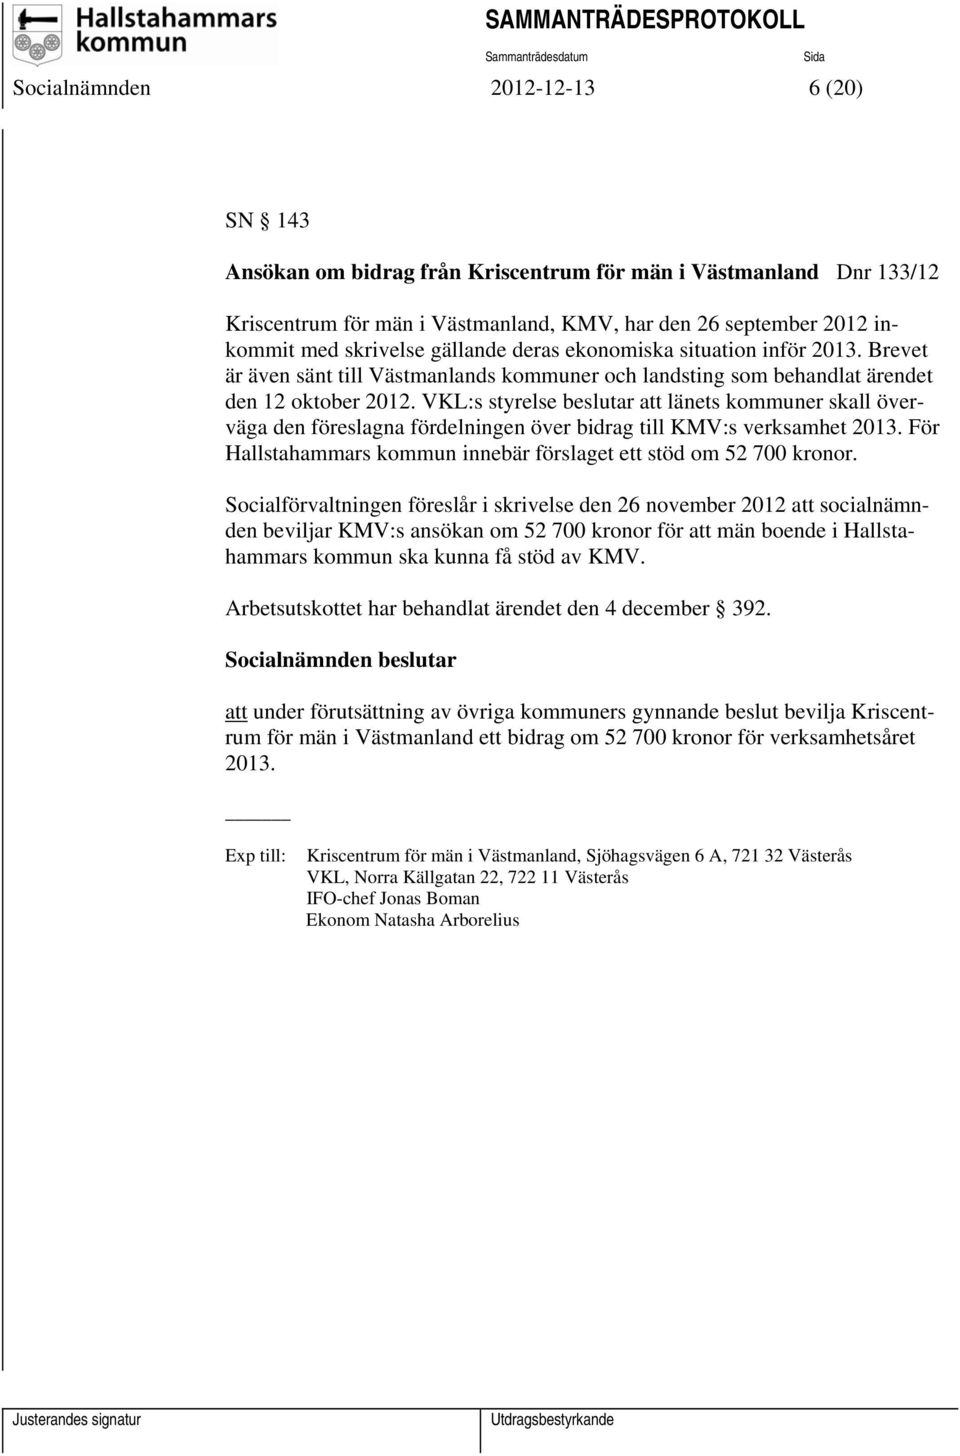 VKL:s styrelse beslutar att länets kommuner skall överväga den föreslagna fördelningen över bidrag till KMV:s verksamhet 2013. För Hallstahammars kommun innebär förslaget ett stöd om 52 700 kronor.